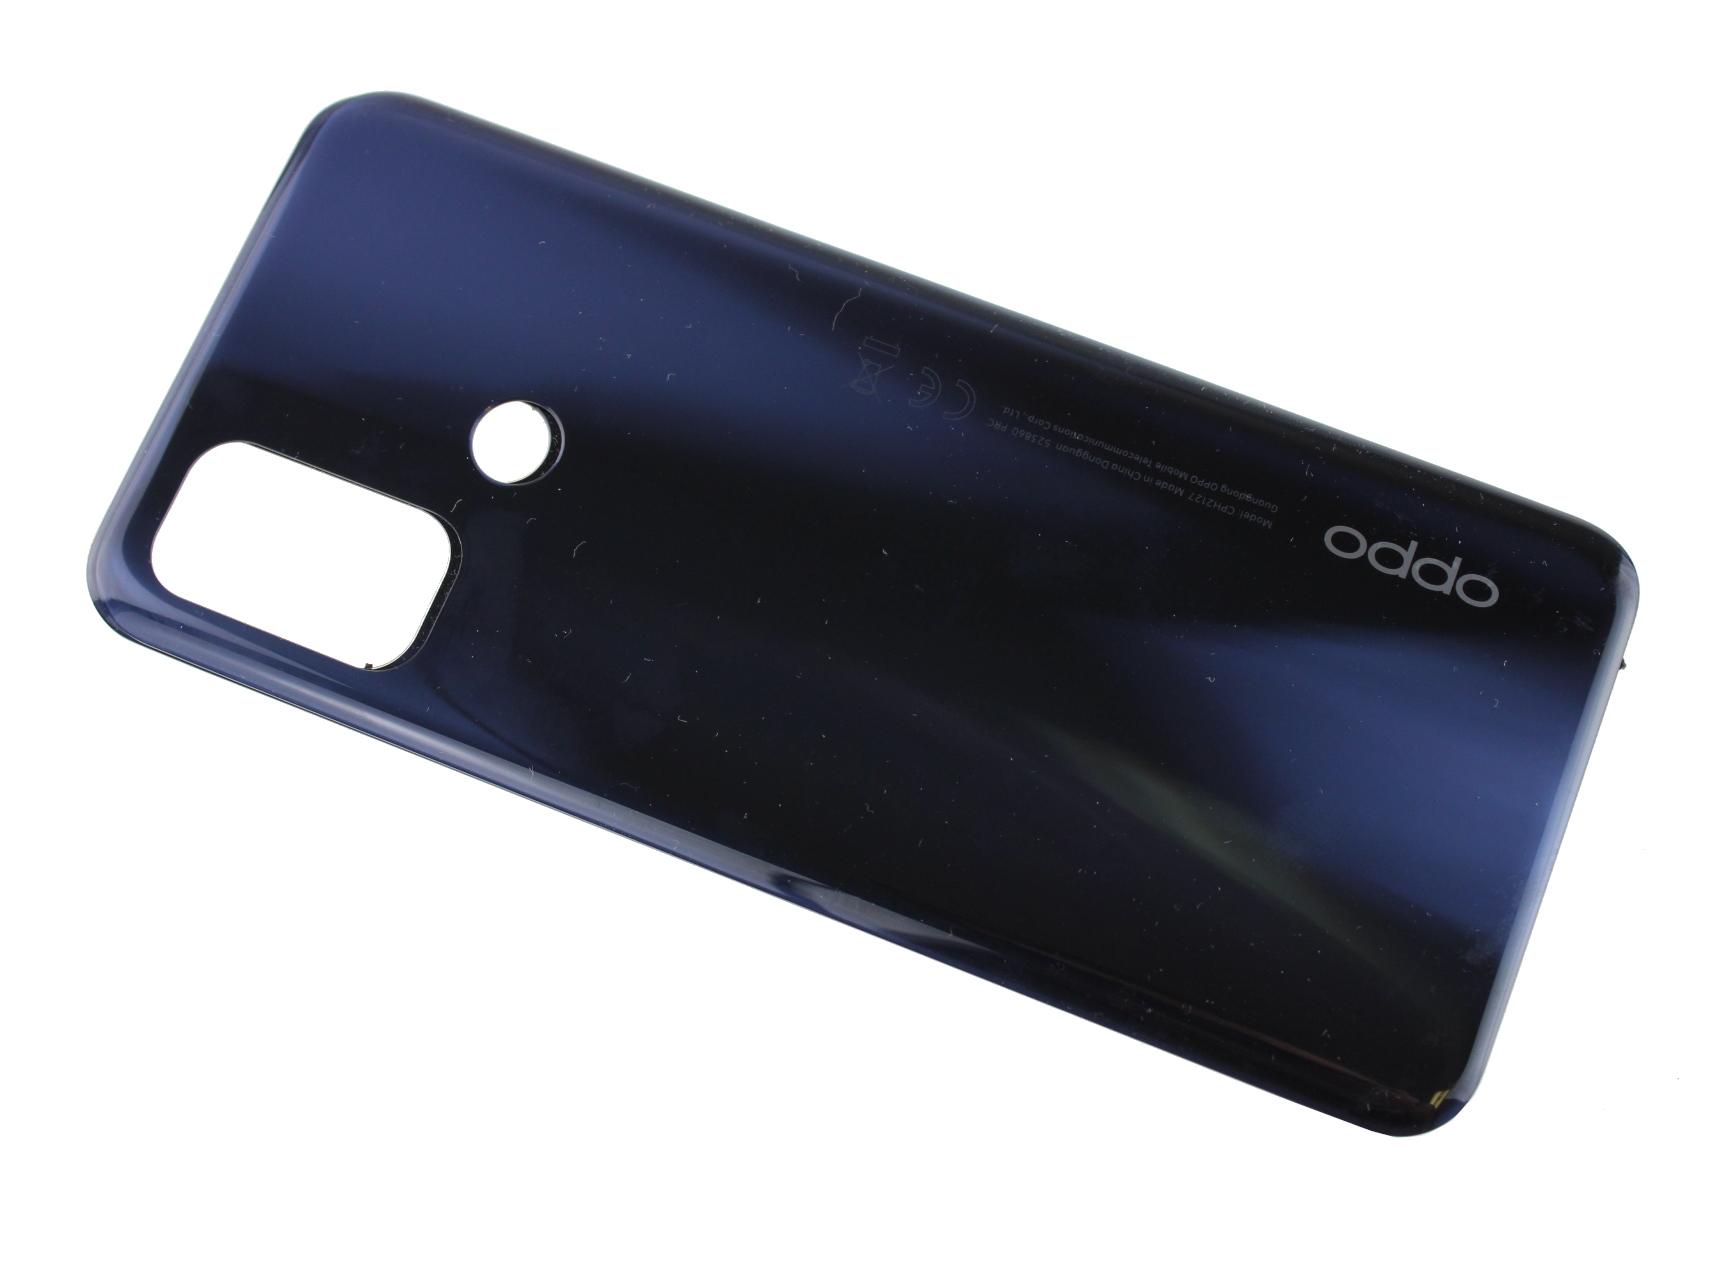 Originál kryt baterie Oppo A53 modrý - demontovaný díl